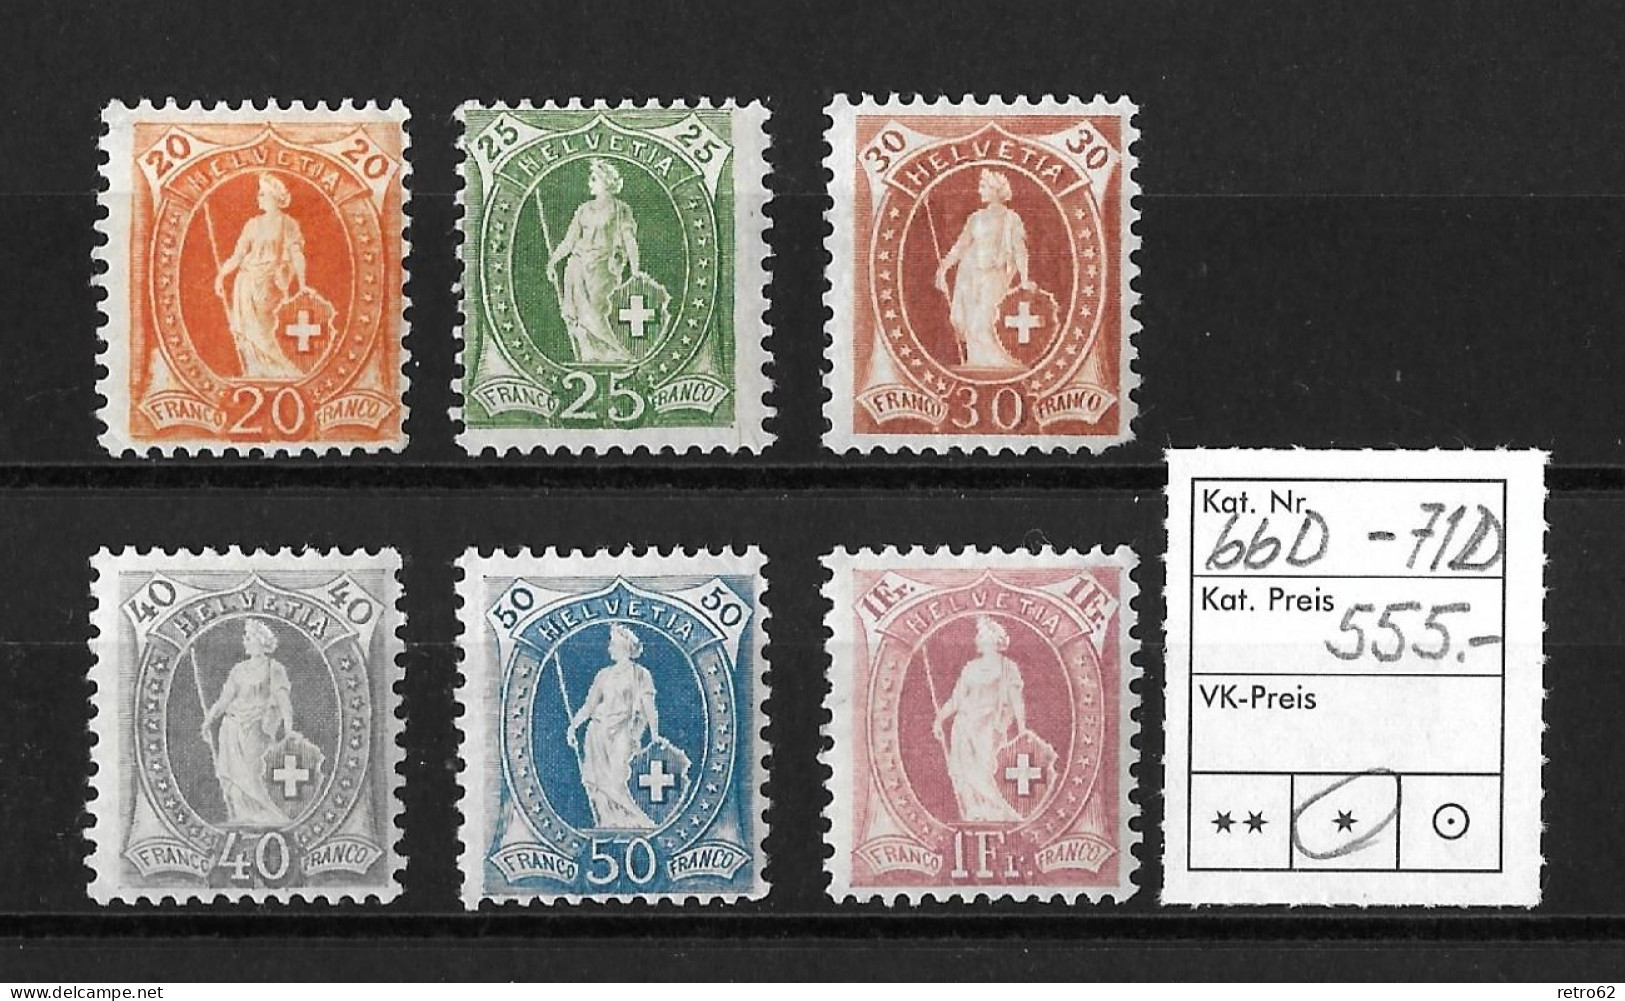 1894 - 1900 STEHENDE HELVETIA  Weisses Papier Kontrollzeichen Form B    ►SBK-66D* Bis 71D*◄ - Unused Stamps